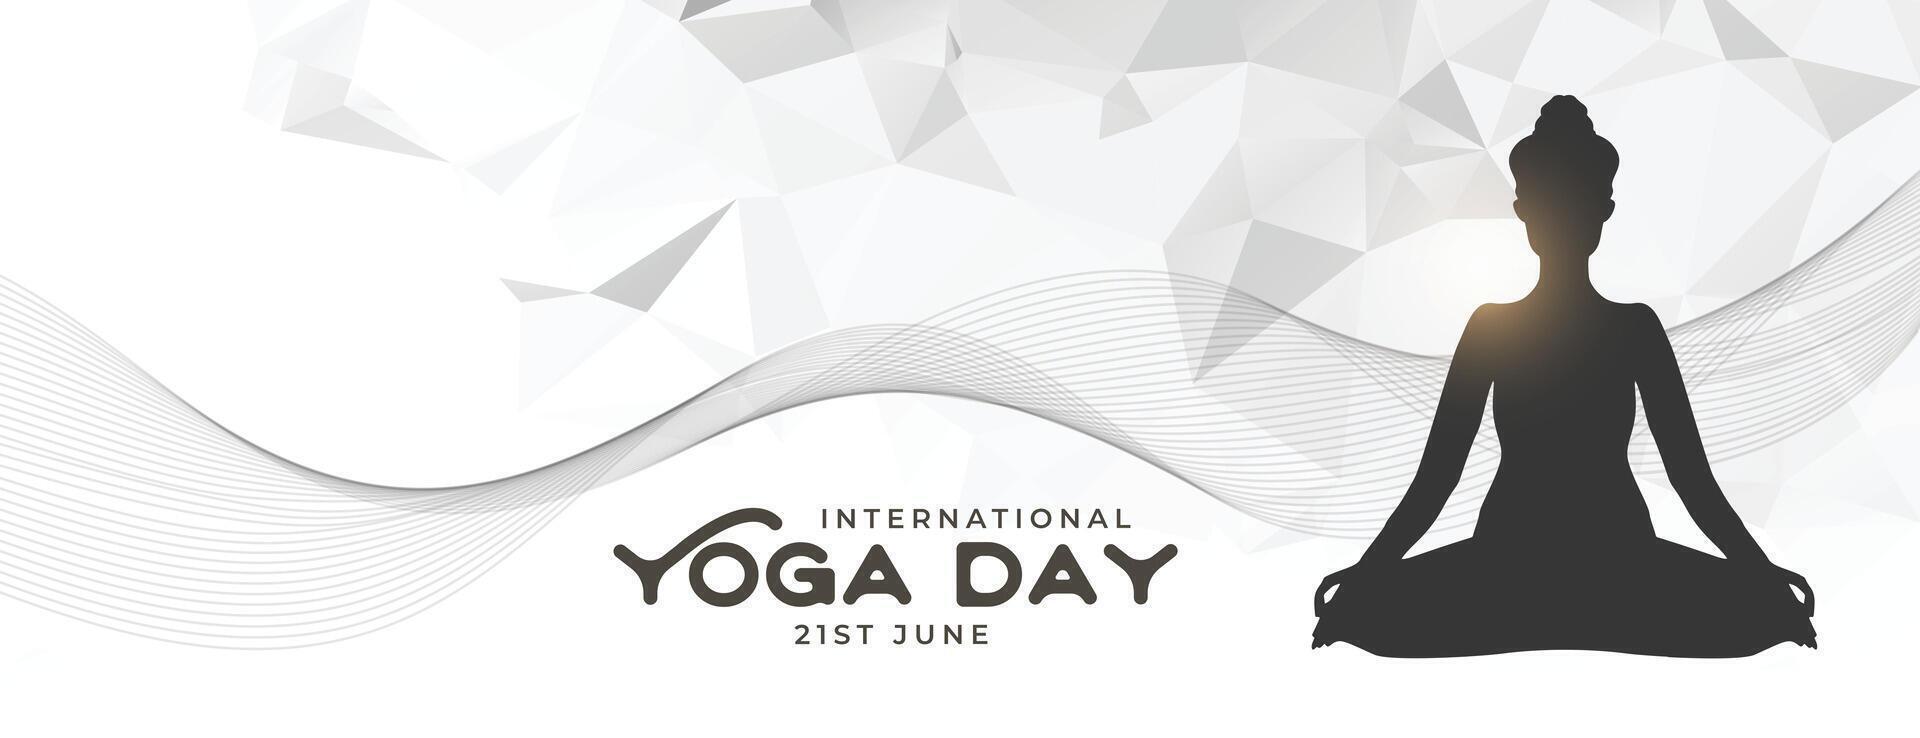 moderno internazionale yoga giorno manifesto nel Basso poli stile vettore